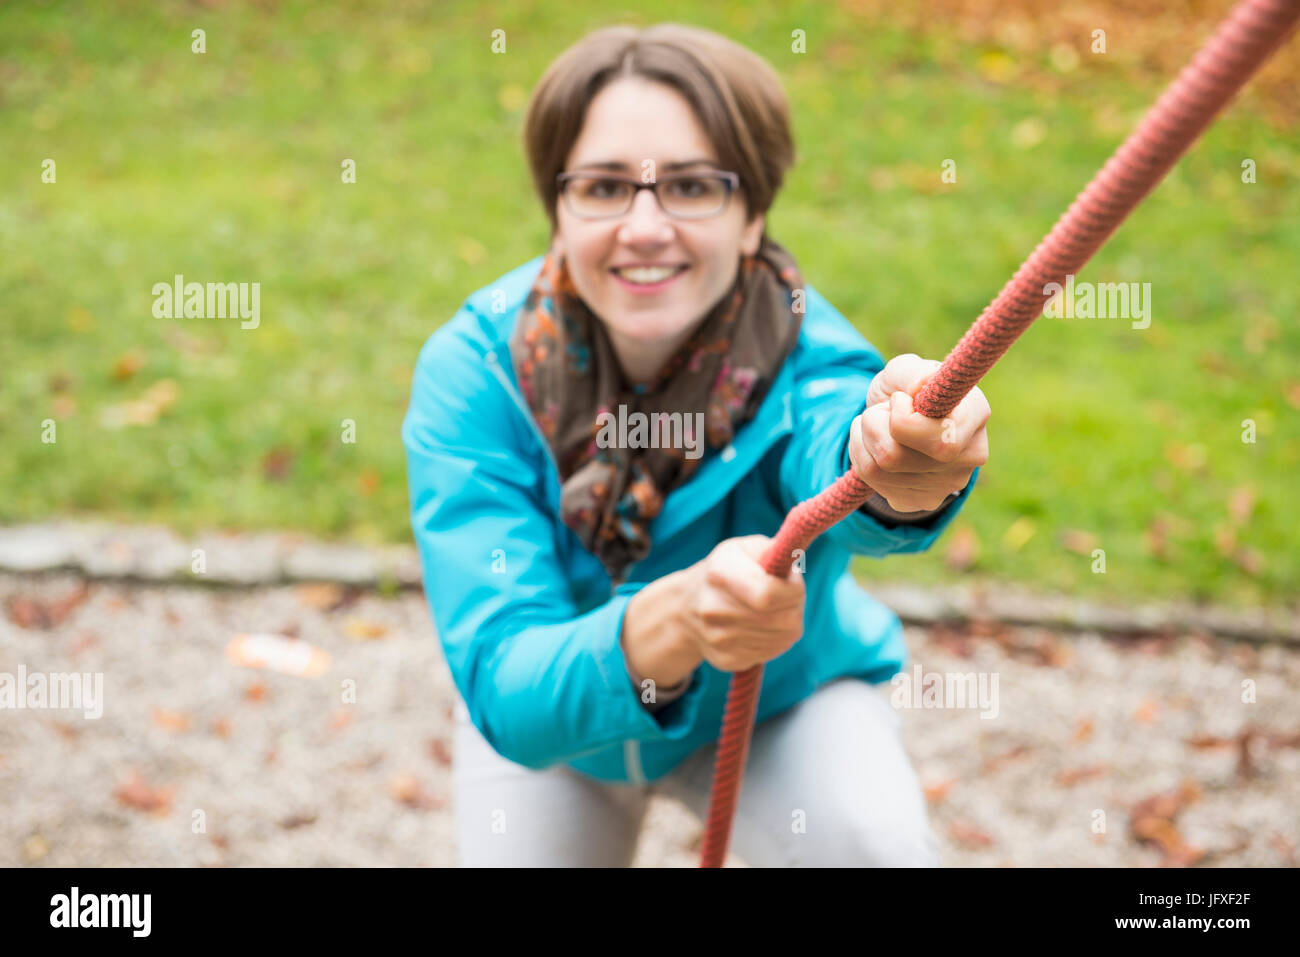 La donna stessa trazione verso l'alto su una corda di un parco giochi in un paesaggio autunnale Foto Stock